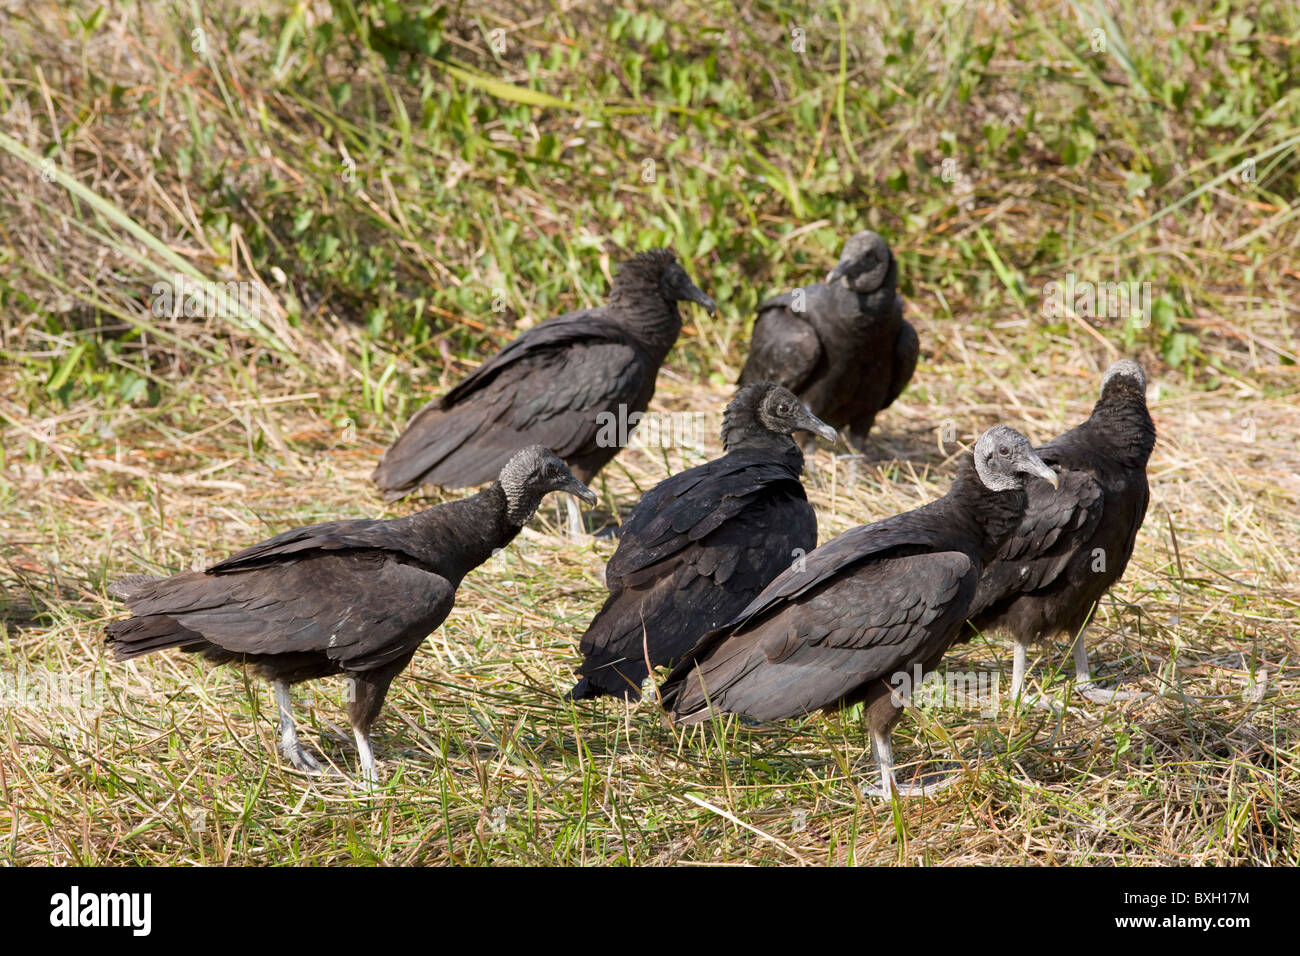 Les vautours noirs, Coragyps atratus, dans les Everglades, Florida, USA Banque D'Images